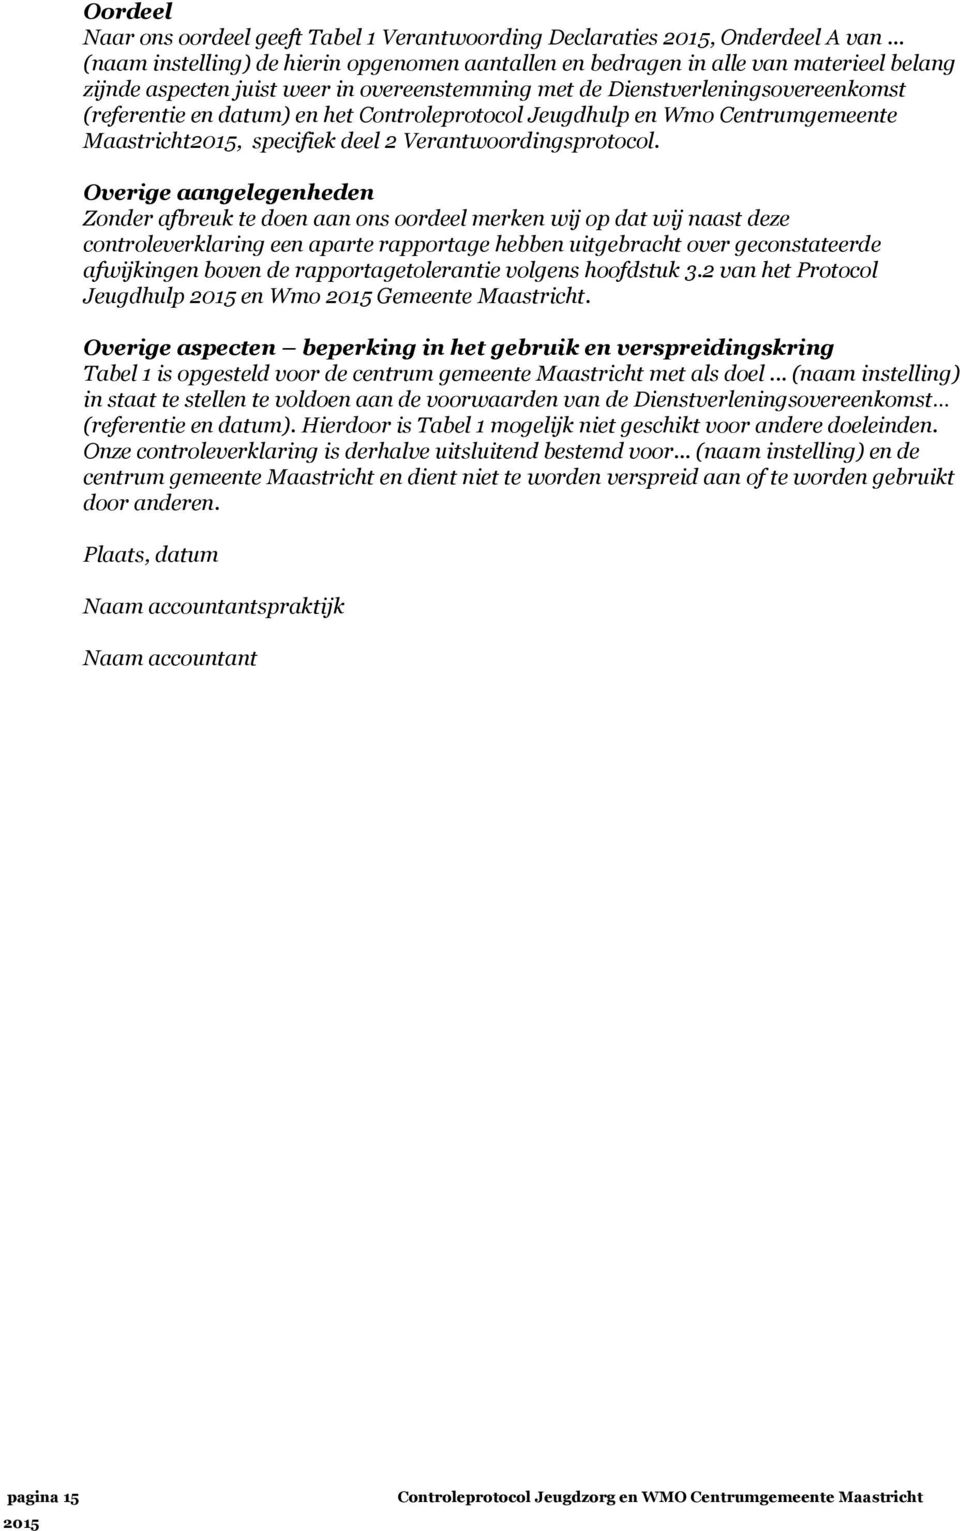 het Controleprotocol Jeugdhulp en Wmo Centrumgemeente Maastricht2015, specifiek deel 2 Verantwoordingsprotocol.